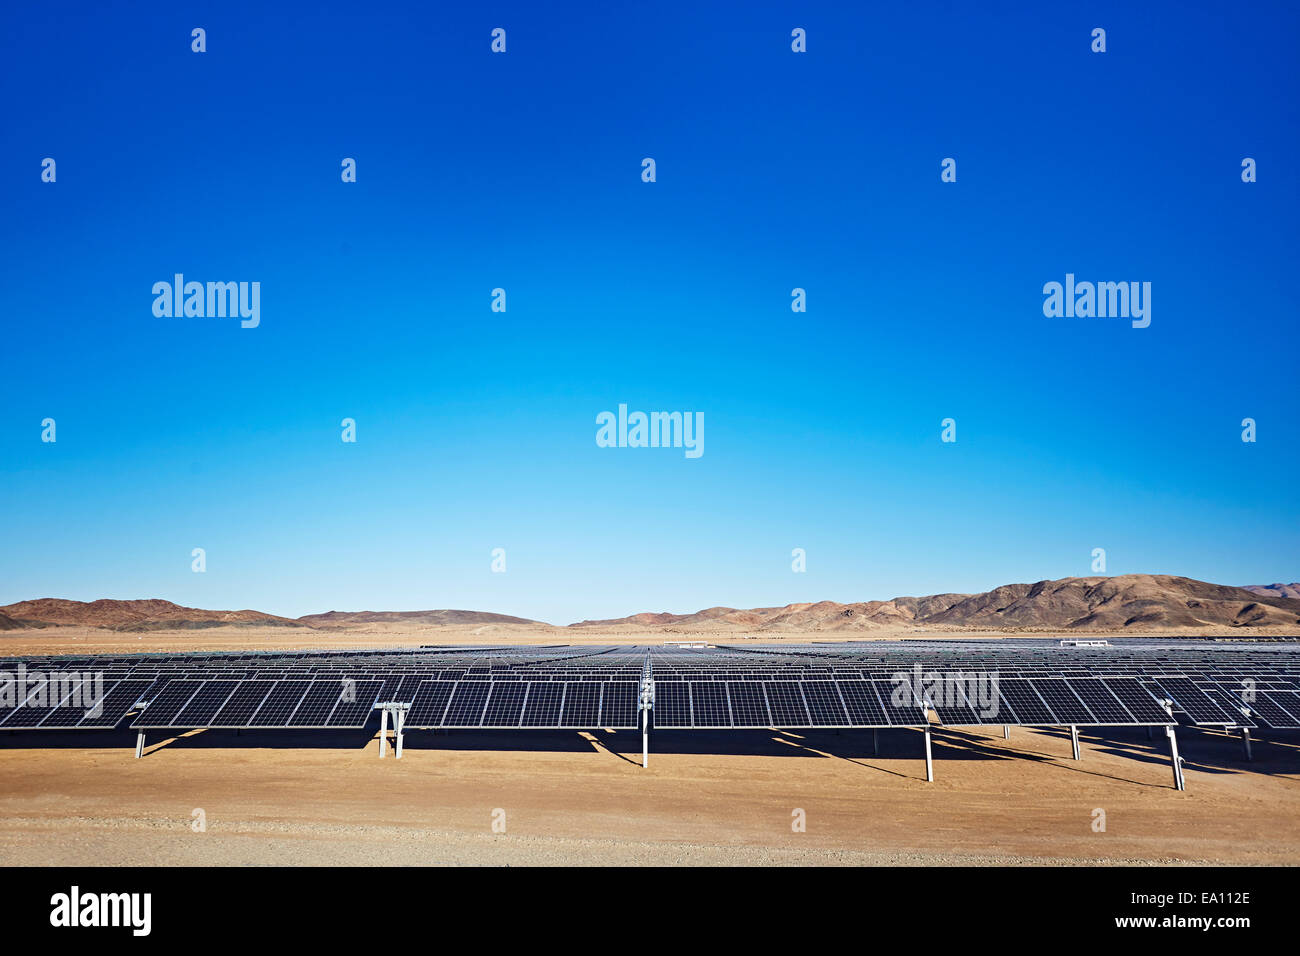 Solar panels, Joshua Tree National Park, California, USA Stock Photo